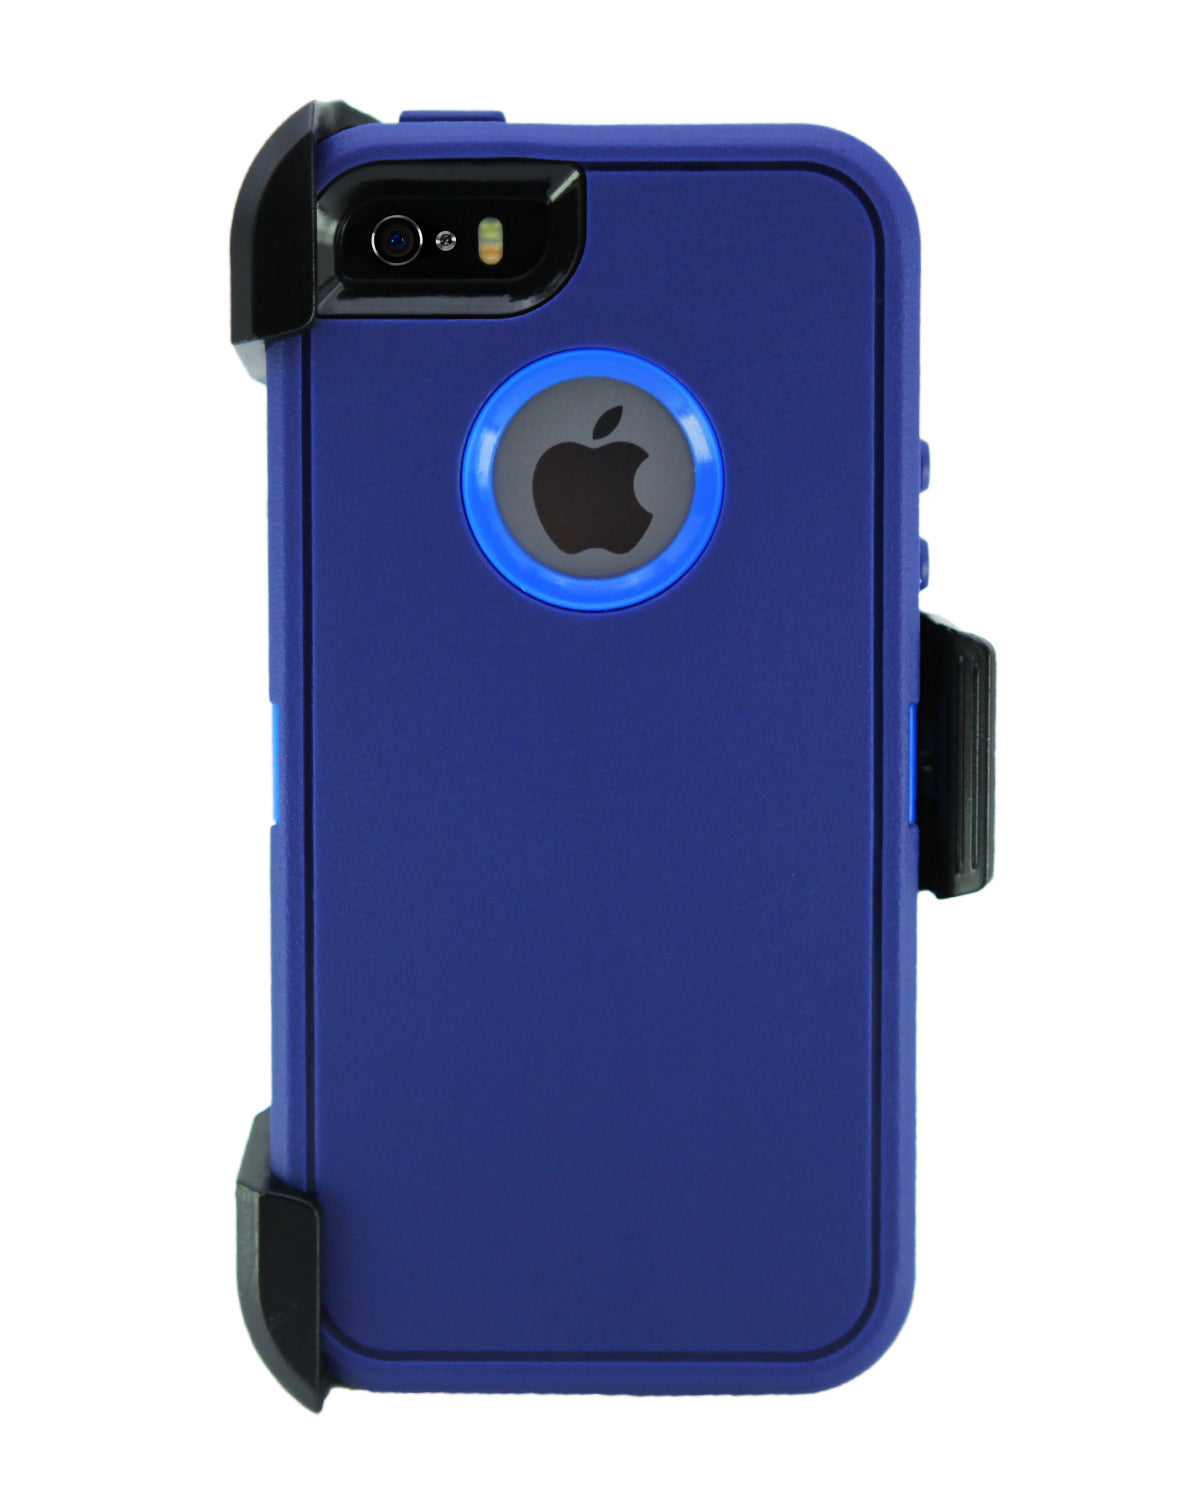 iphone5c cases